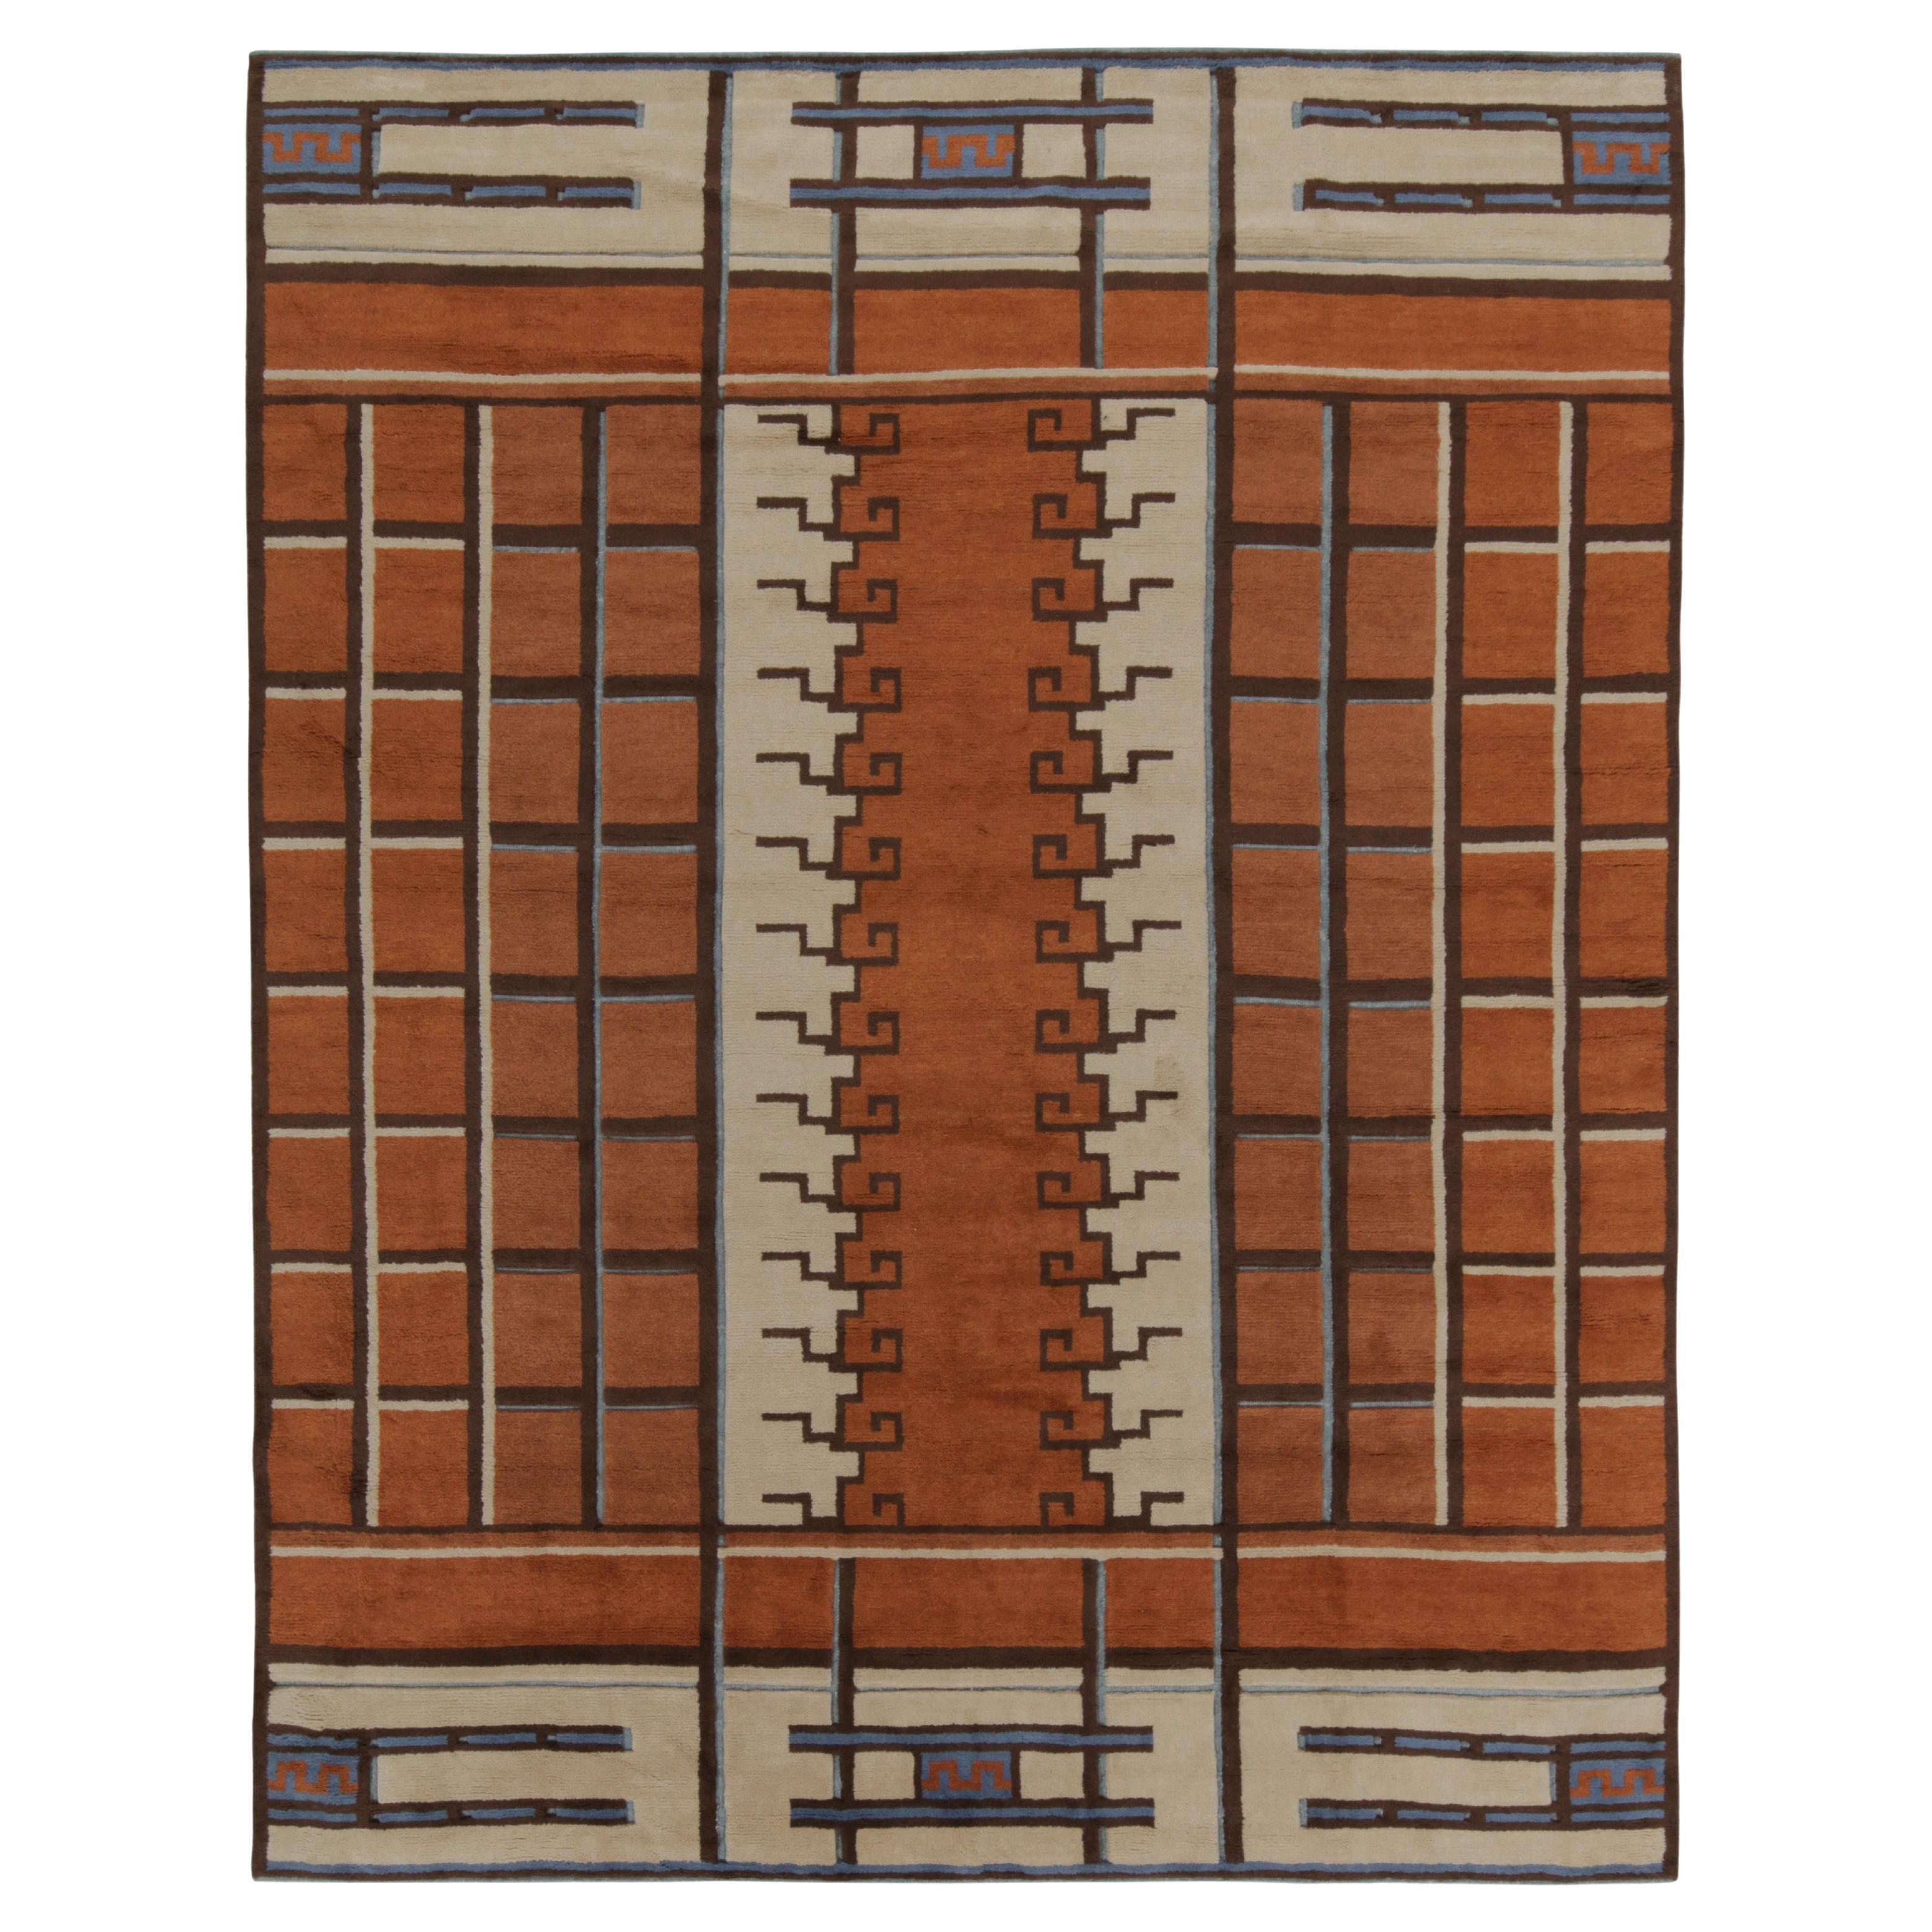 Schwedischer Teppich im Deko-Stil von Teppich &amp; Kilims in Rost-Orange, Beige-Brown und Blaumuster